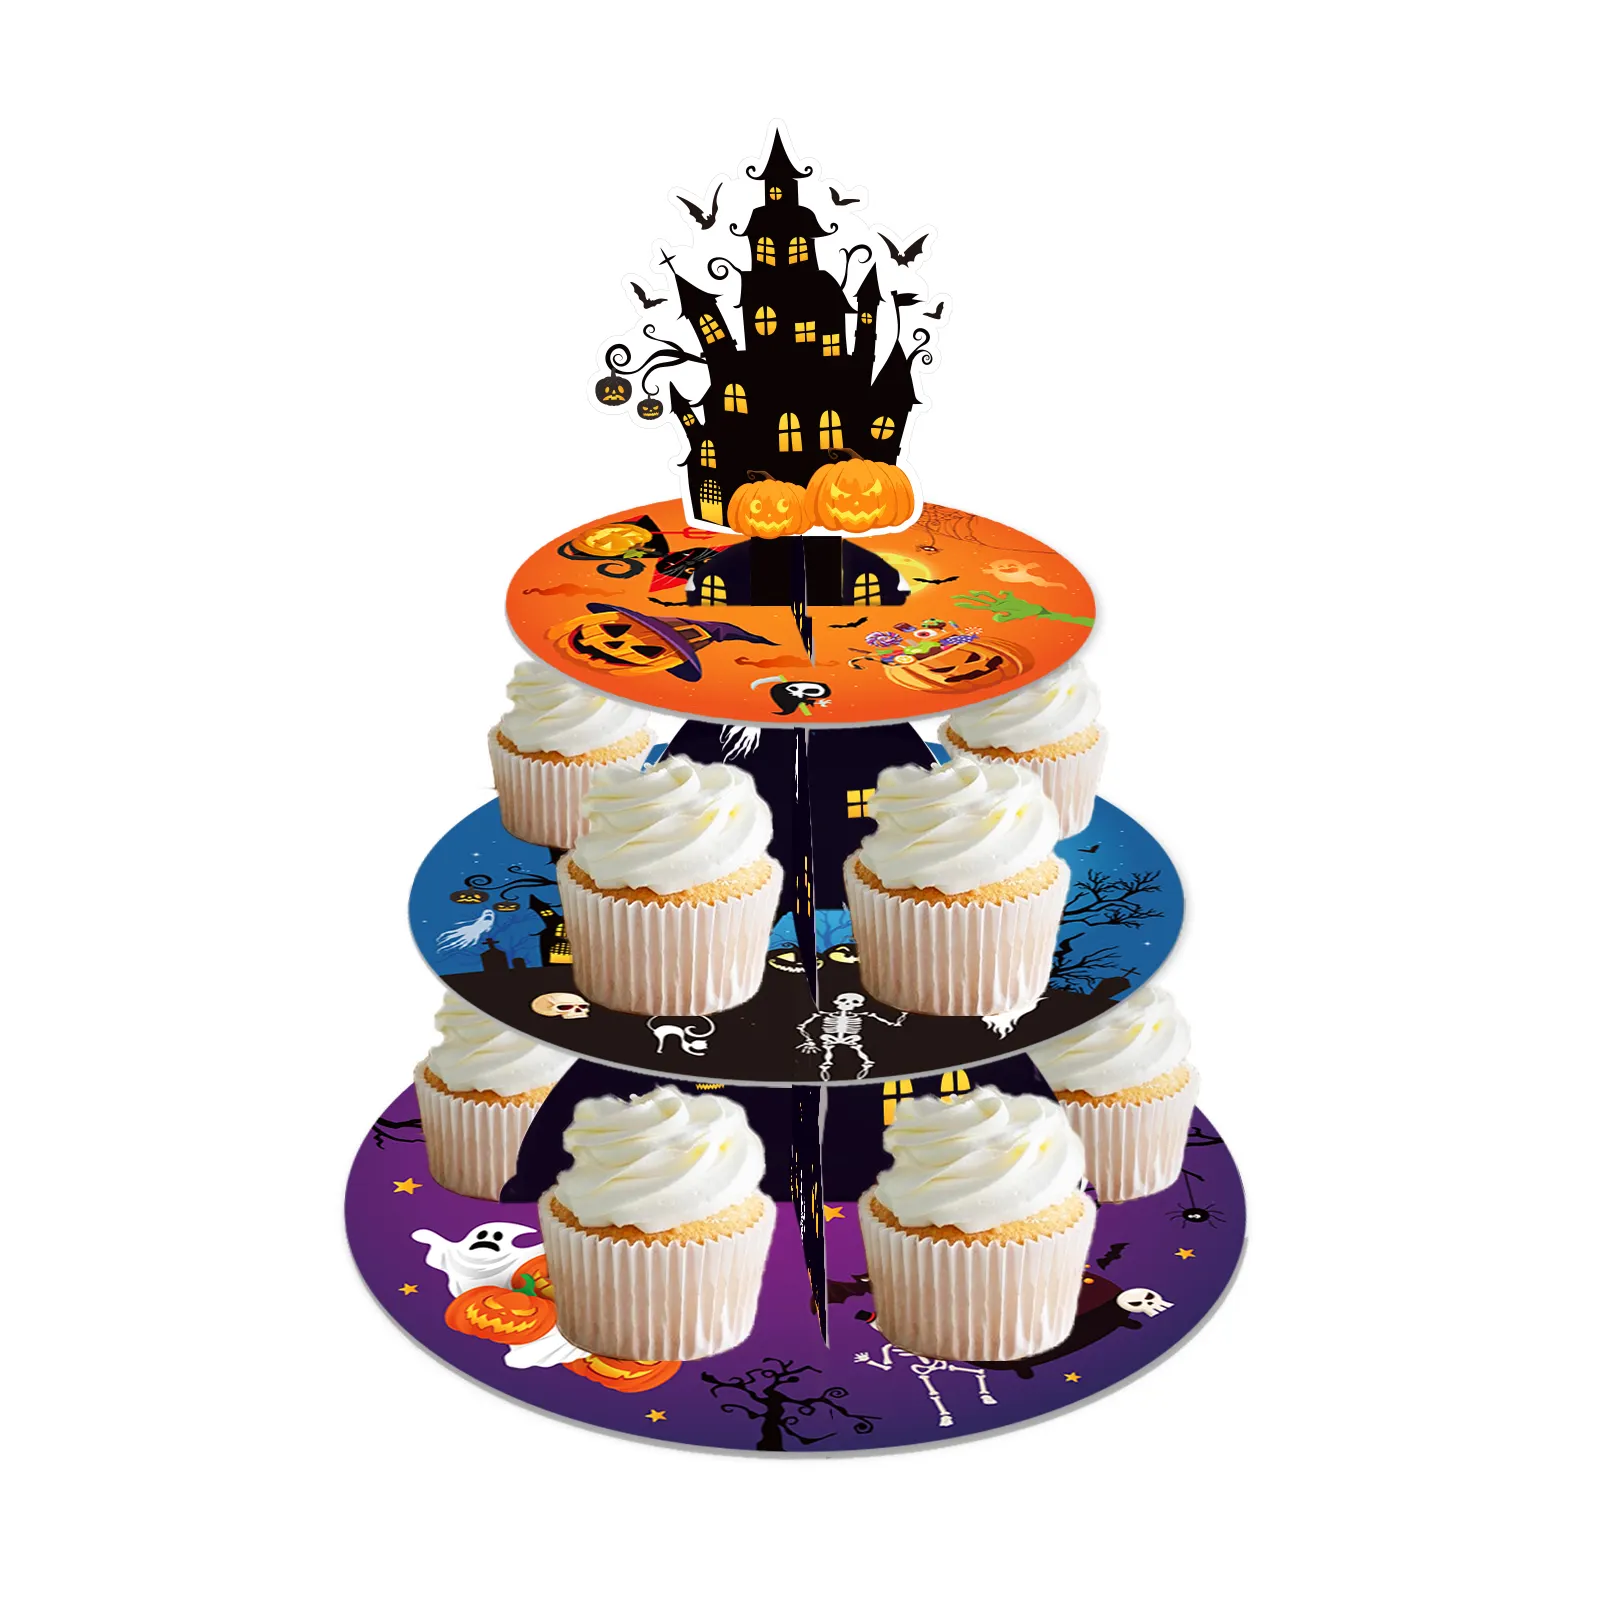 48 Piezas Decoraciones para Tarta de Acción de Gracias Adornos para Cupcakes de Acción de Gracias Envoltorios para Cupcakes de Acción de Gracias para Decoración de Tartas de Fiesta 